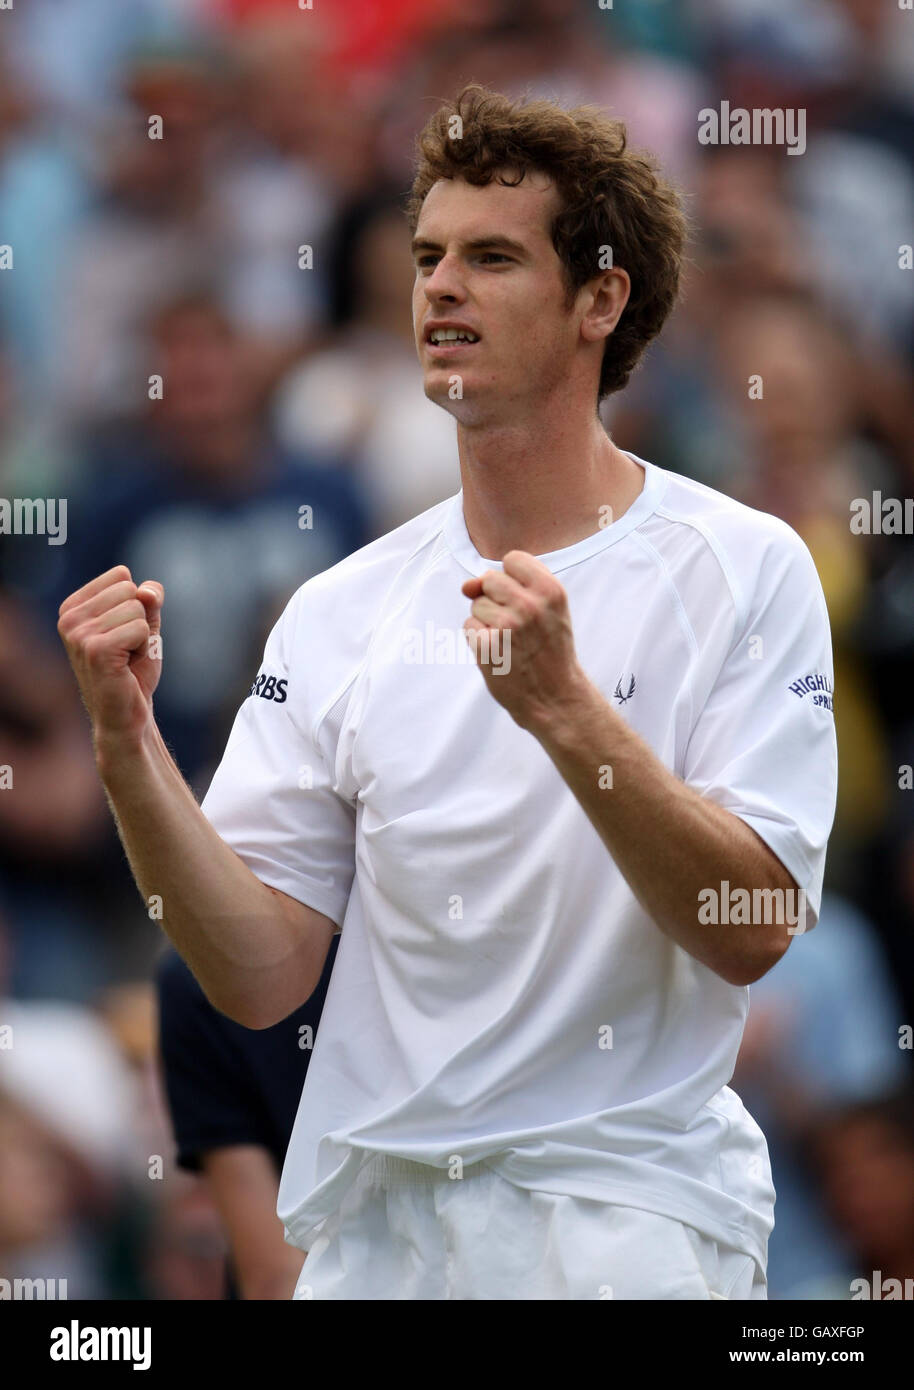 Andy Murray della Gran Bretagna celebra la vittoria contro Tommy Haas della Germania durante i Campionati di Wimbledon 2008 all'All England Tennis Club di Wimbledon. Foto Stock